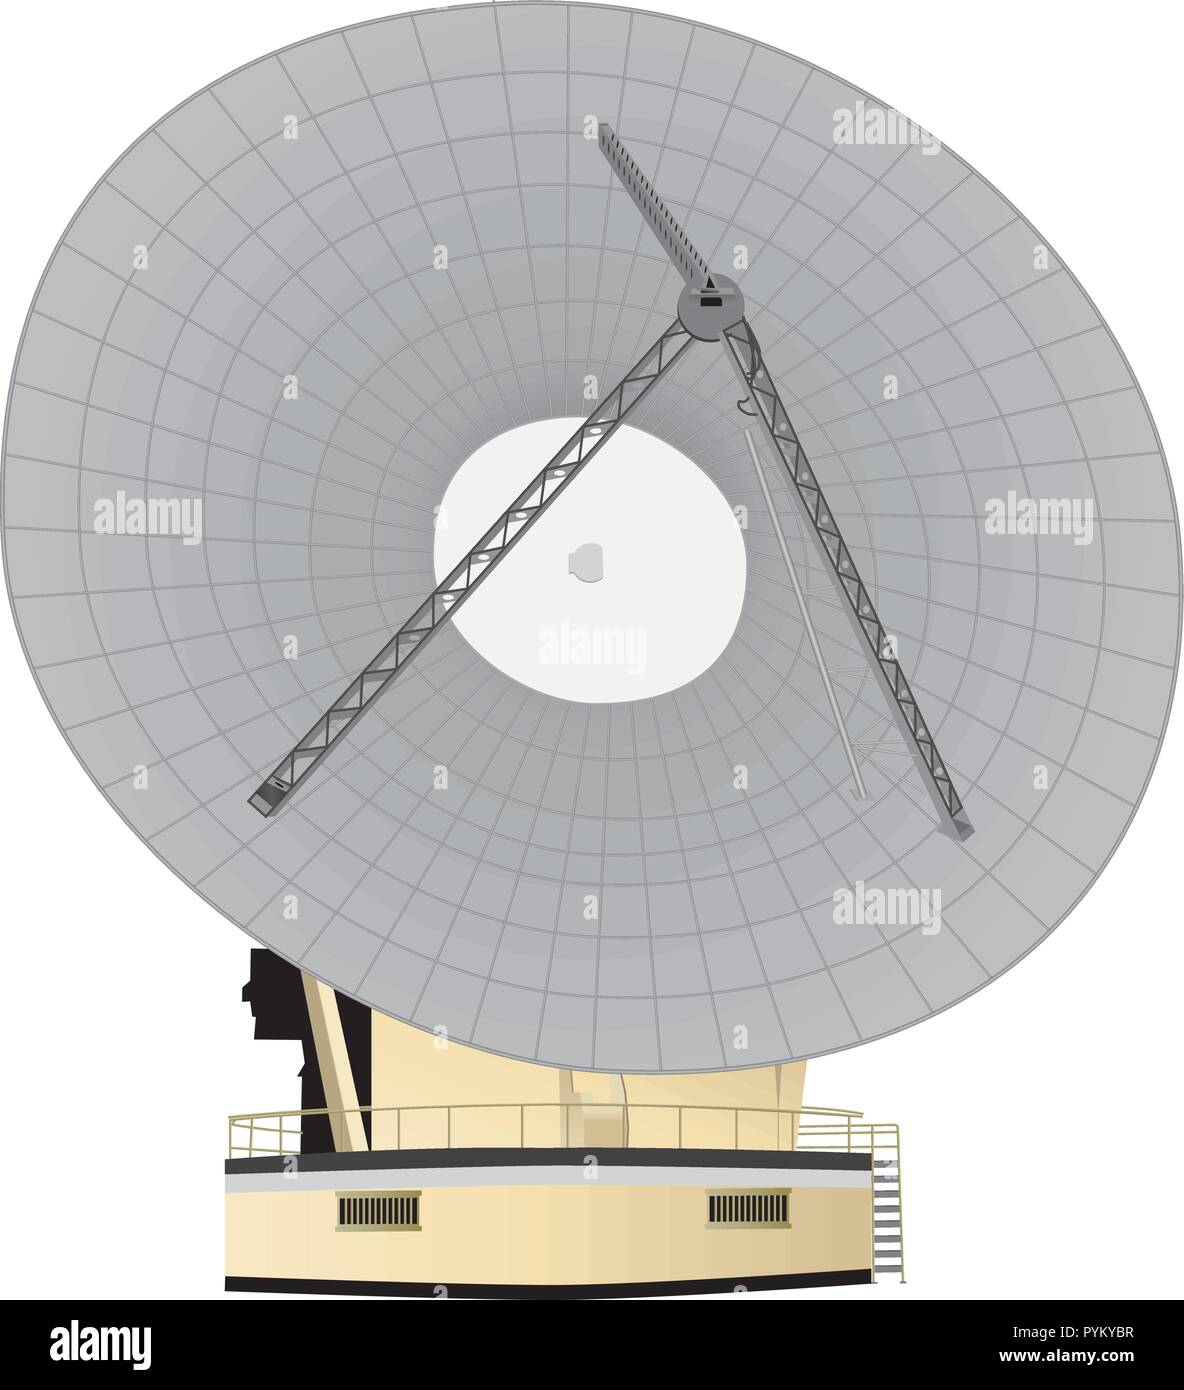 Une grande antenne parabolique de la radiodiffusion et des télécommunications pour recevoir des appels internationaux,communication,transaction banque spaceship Illustration de Vecteur